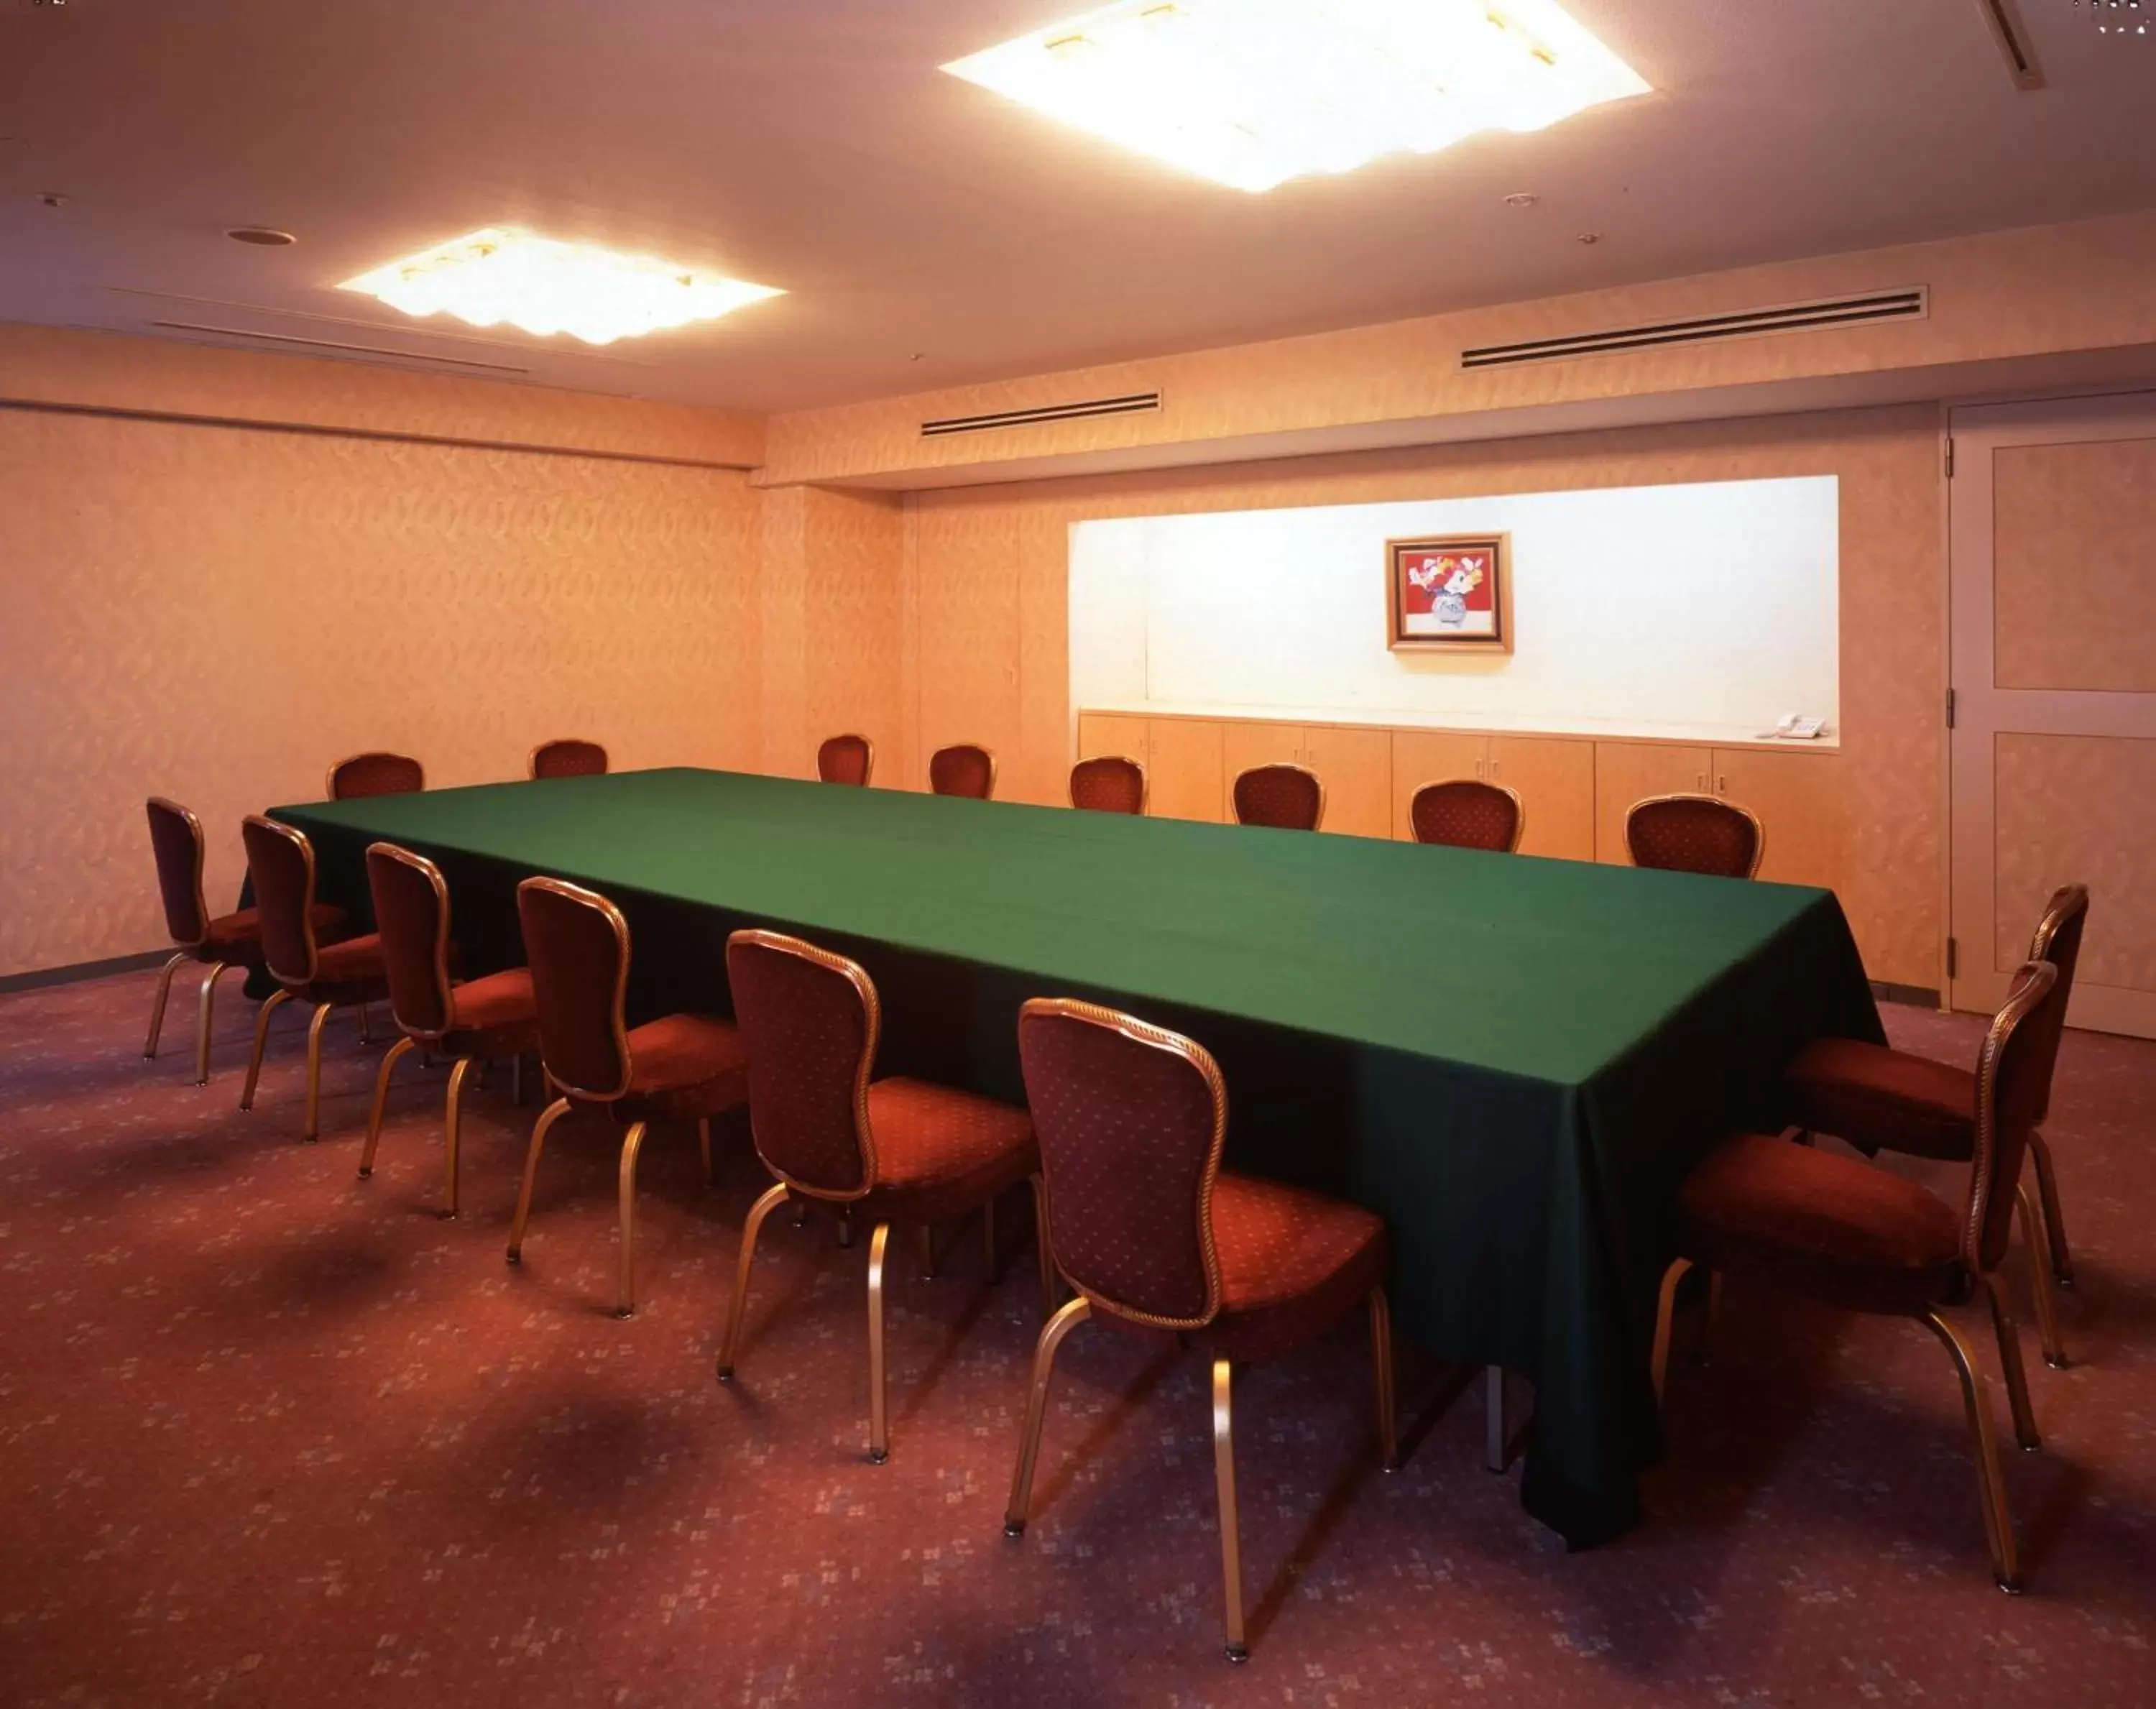 Meeting/conference room in RIHGA Royal Hotel Osaka